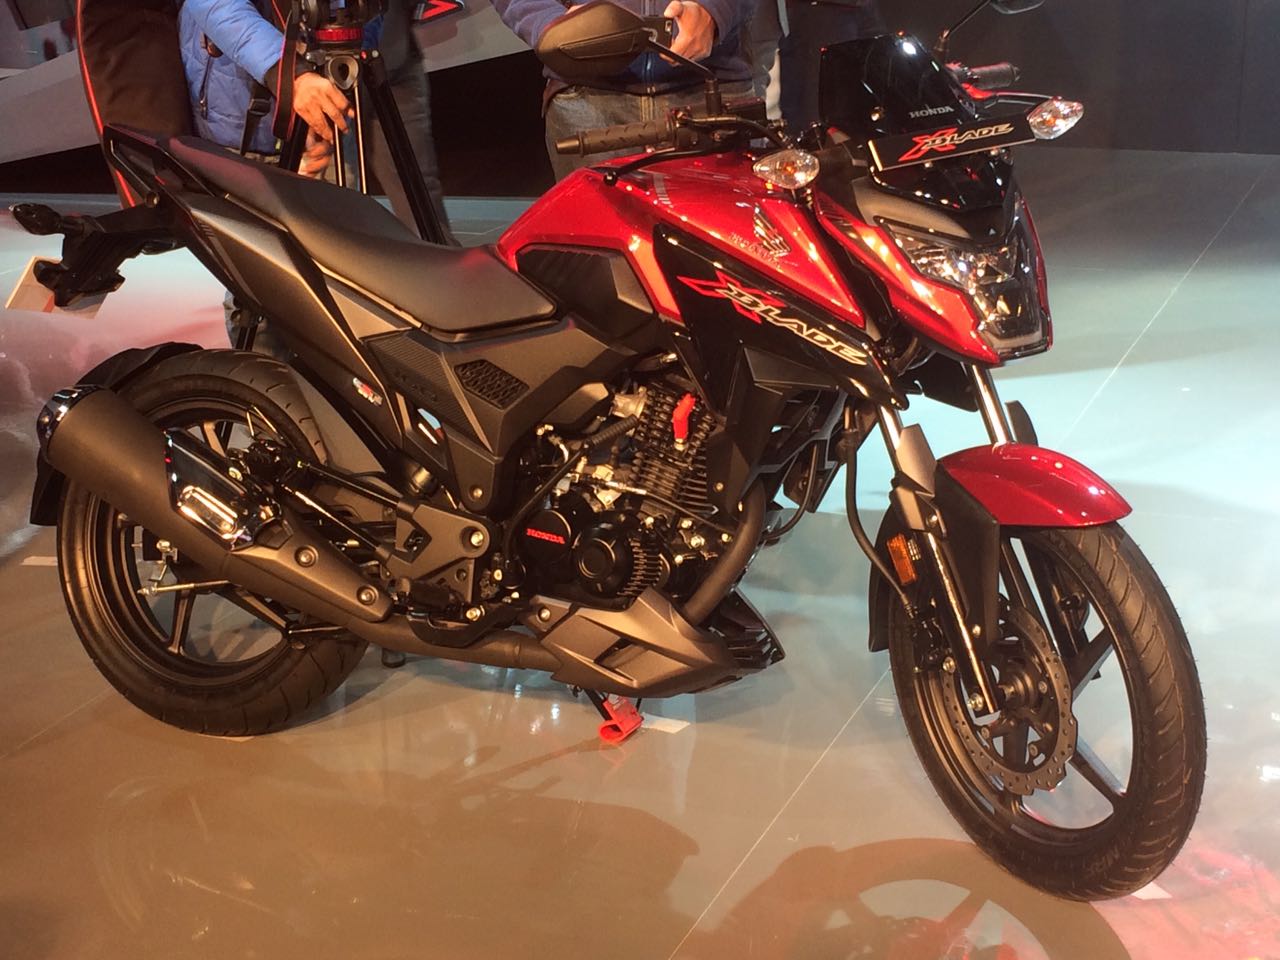  Honda  X  Blade  160cc Motorcycle Debuts at Auto Expo 2019